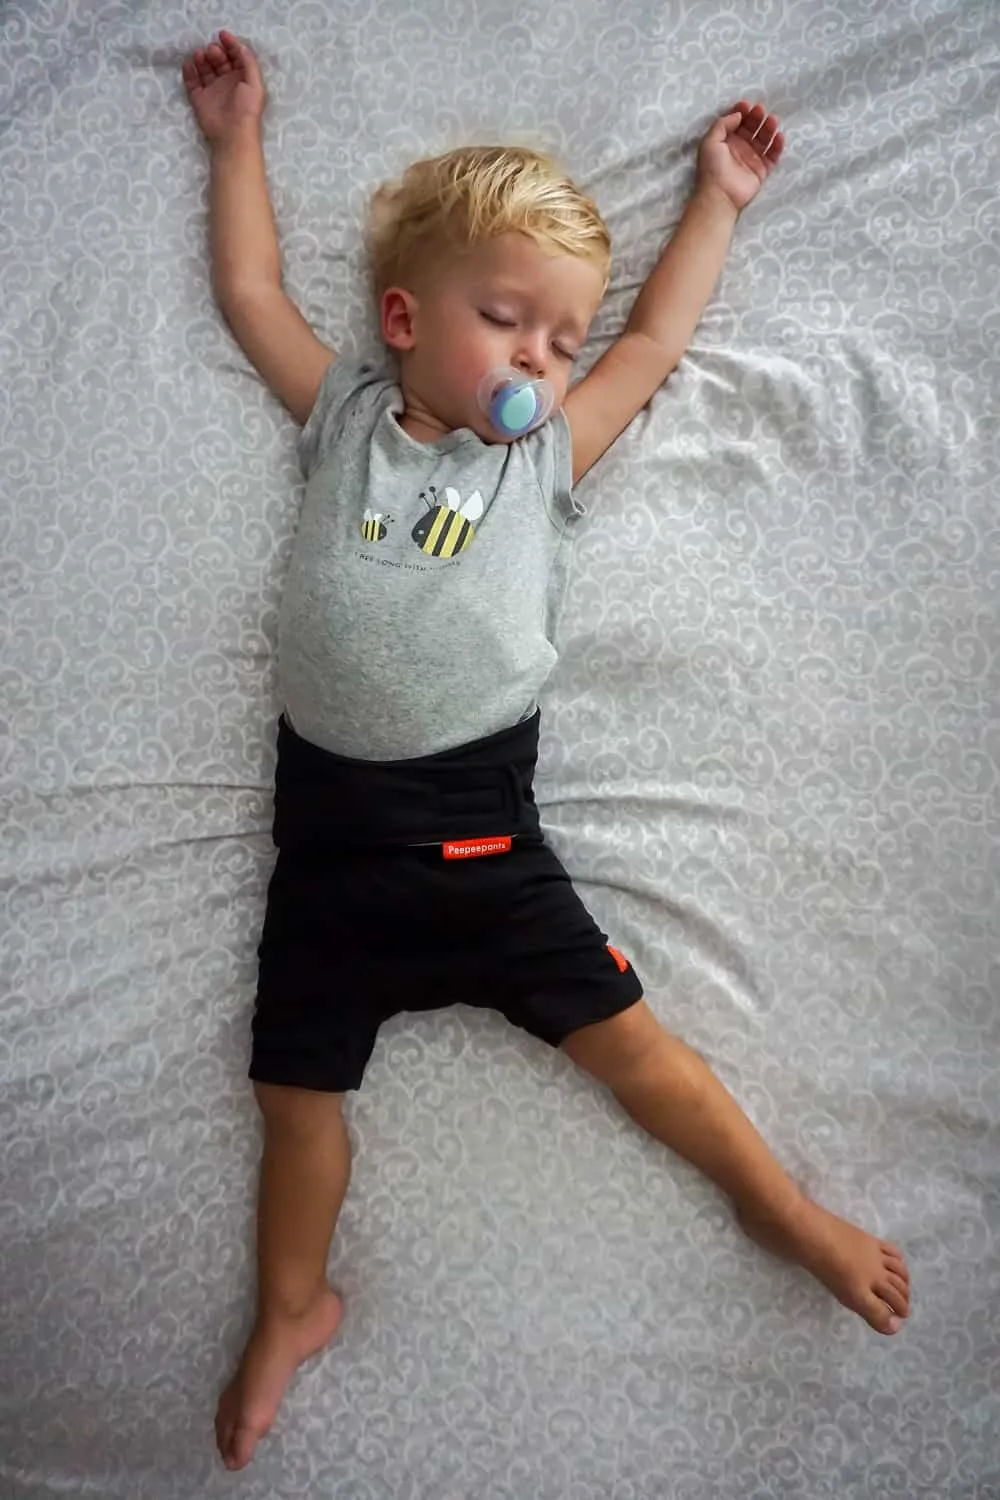 toddler sleeping wearing peepeepants